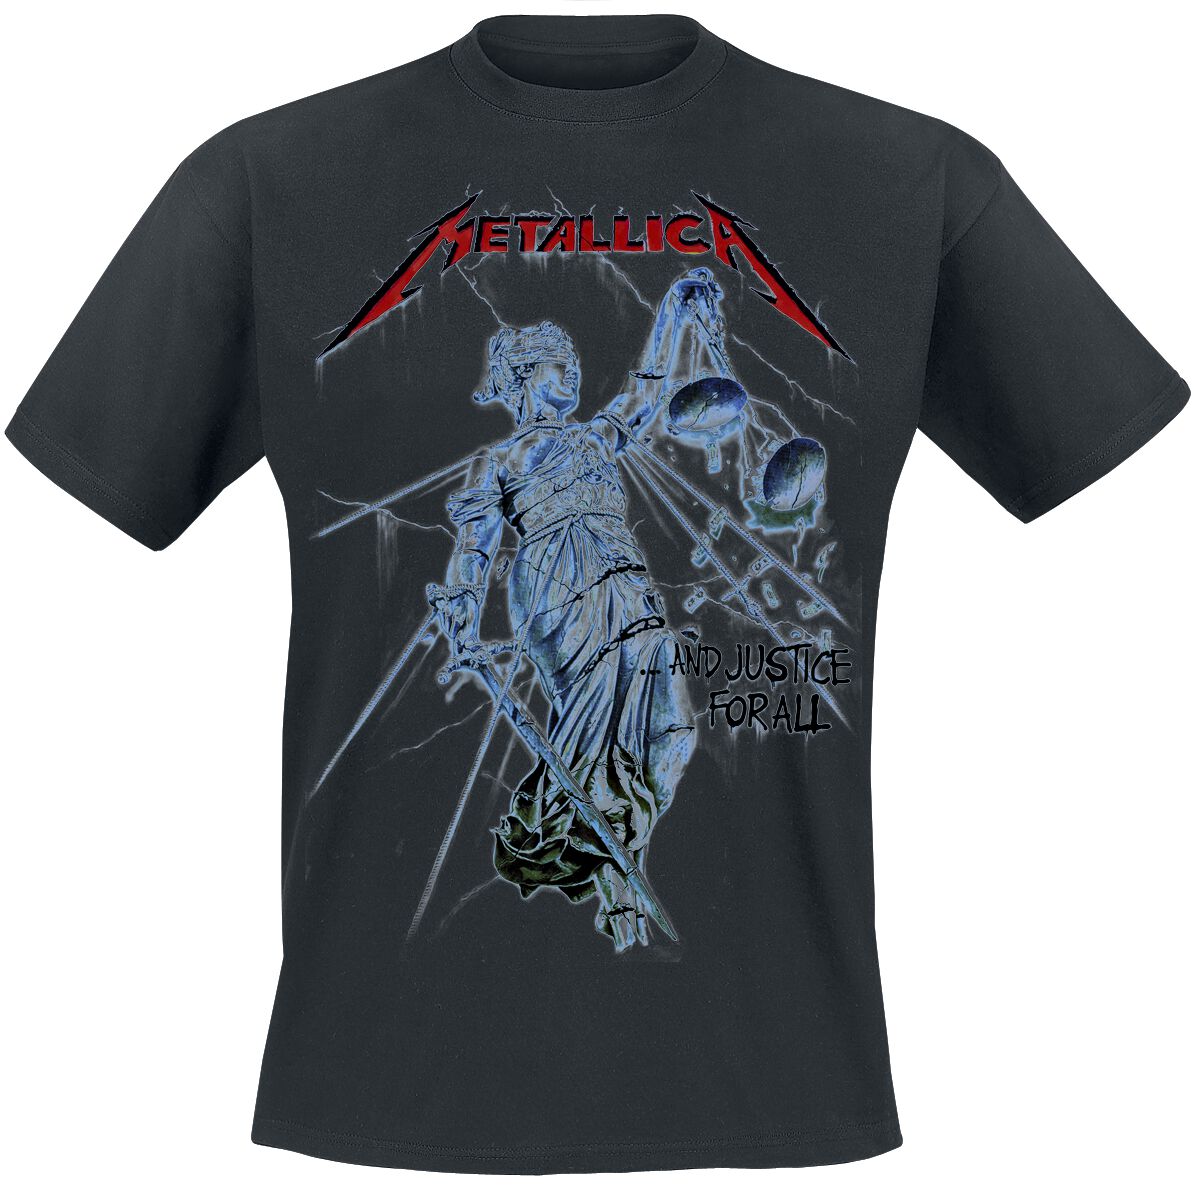 Metallica T-Shirt - And Justice For All - S bis XXL - für Männer - Größe XXL - schwarz  - Lizenziertes Merchandise!